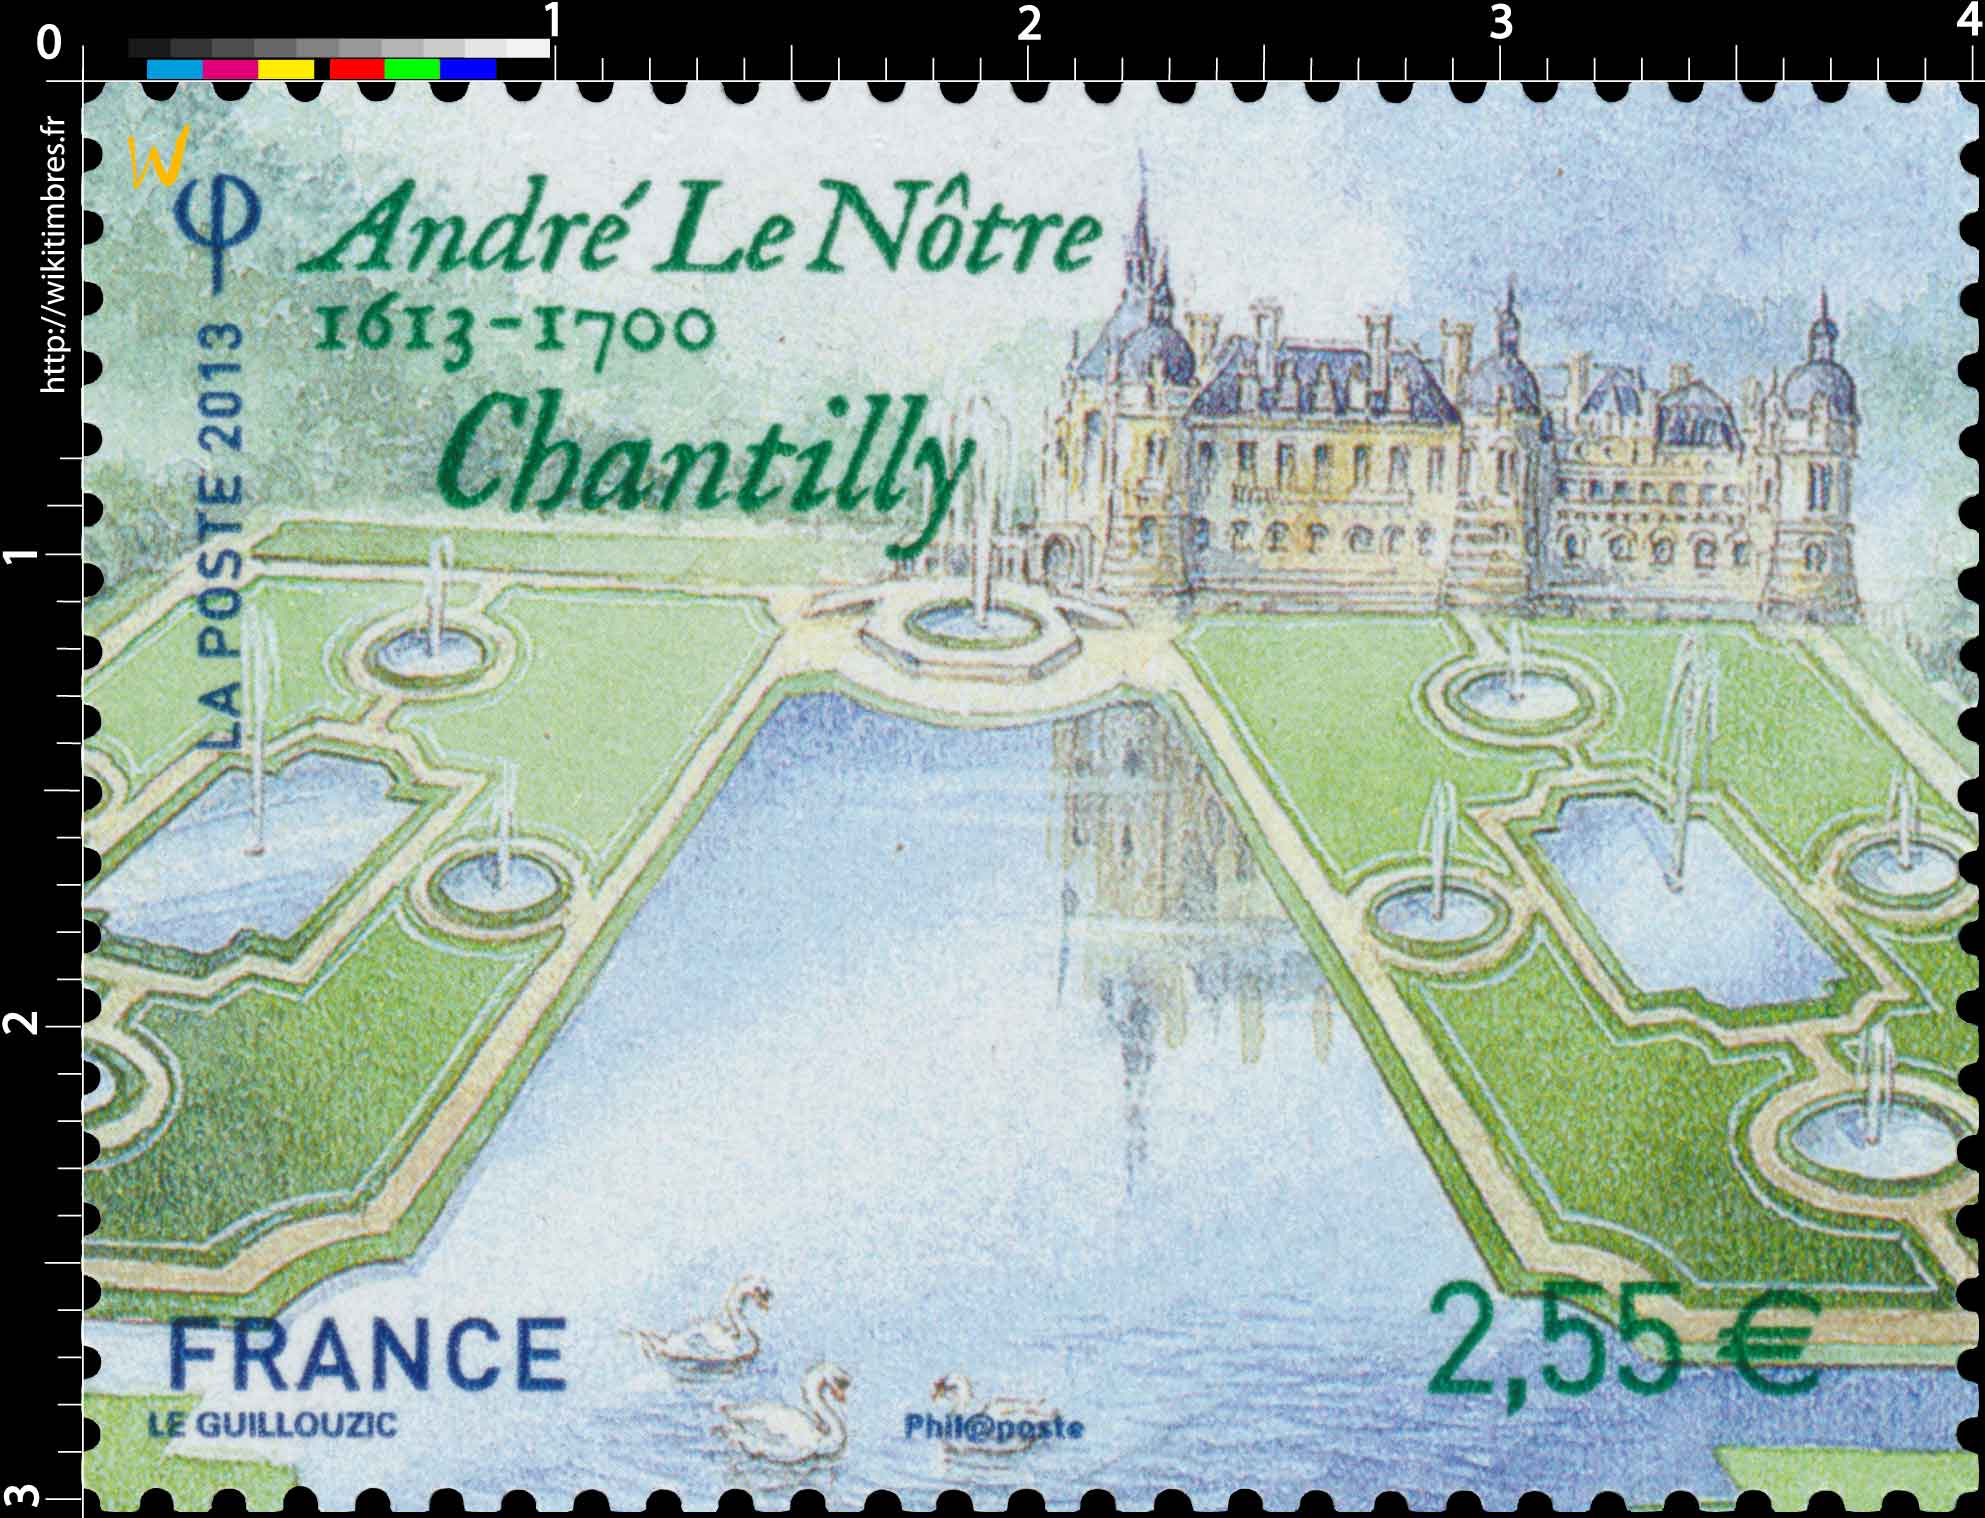 2013 André le Nôtre 1613 - 1700 Chantilly